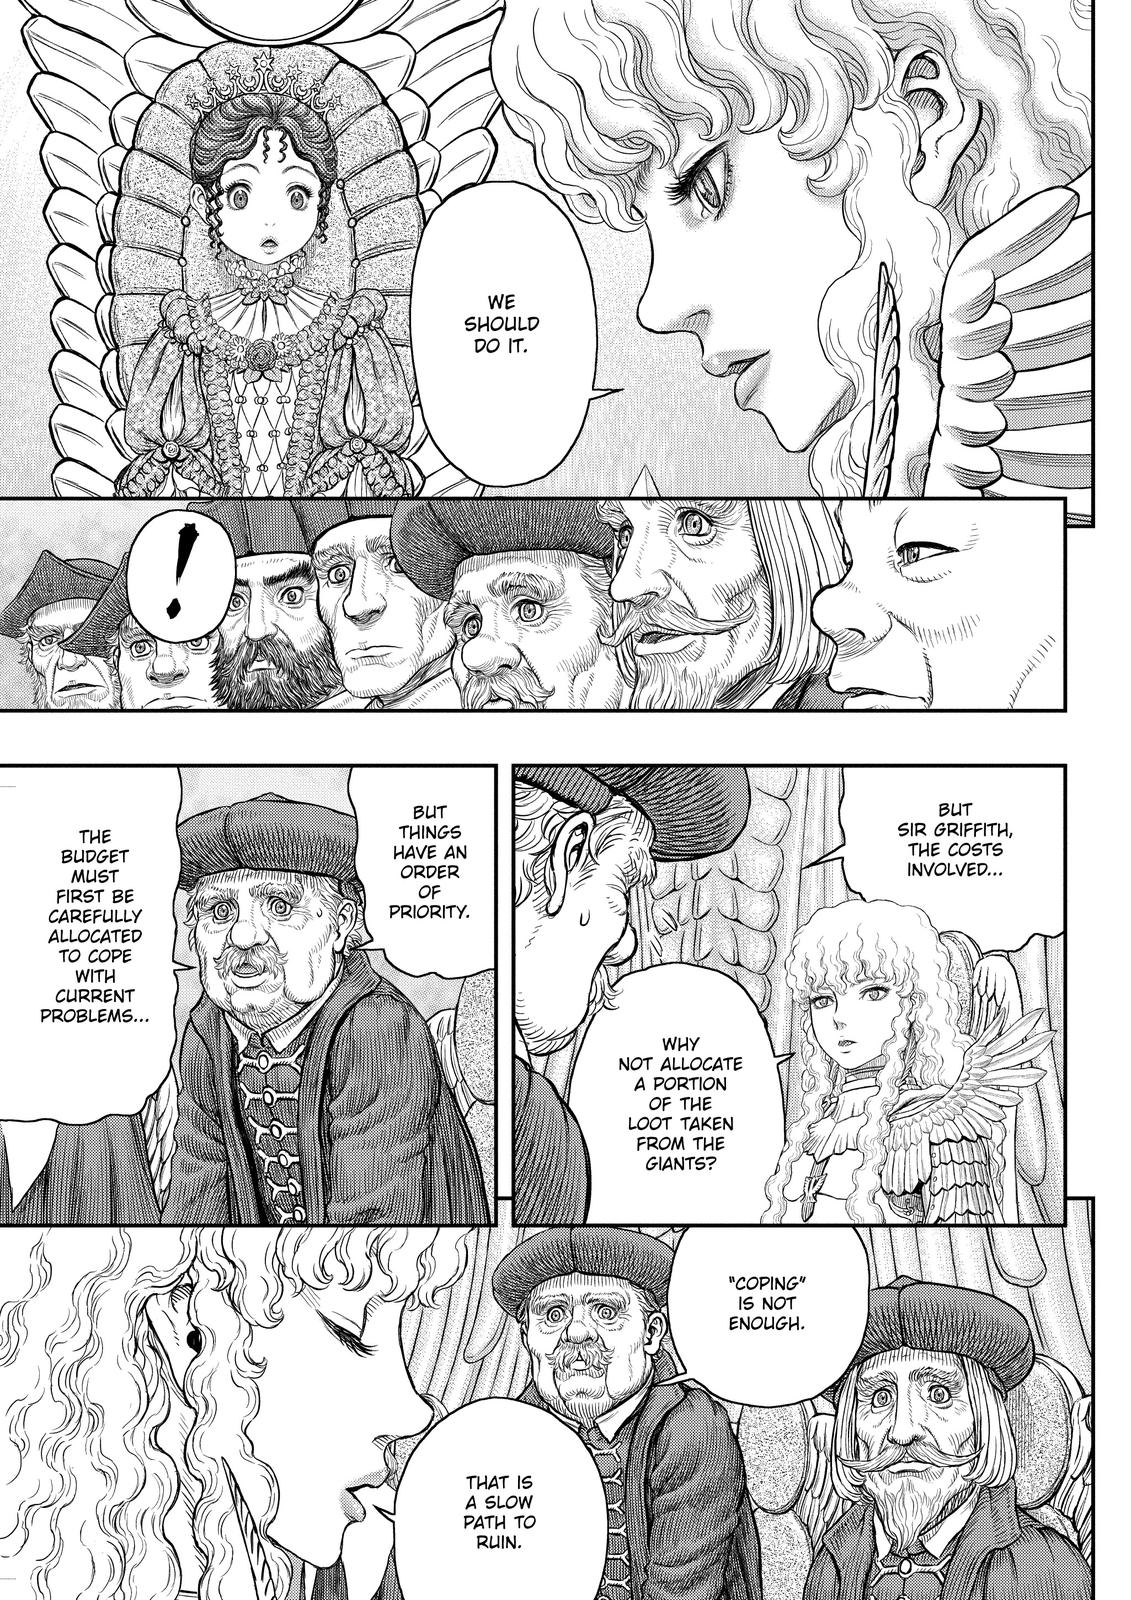 Berserk Manga Chapter 358 image 16